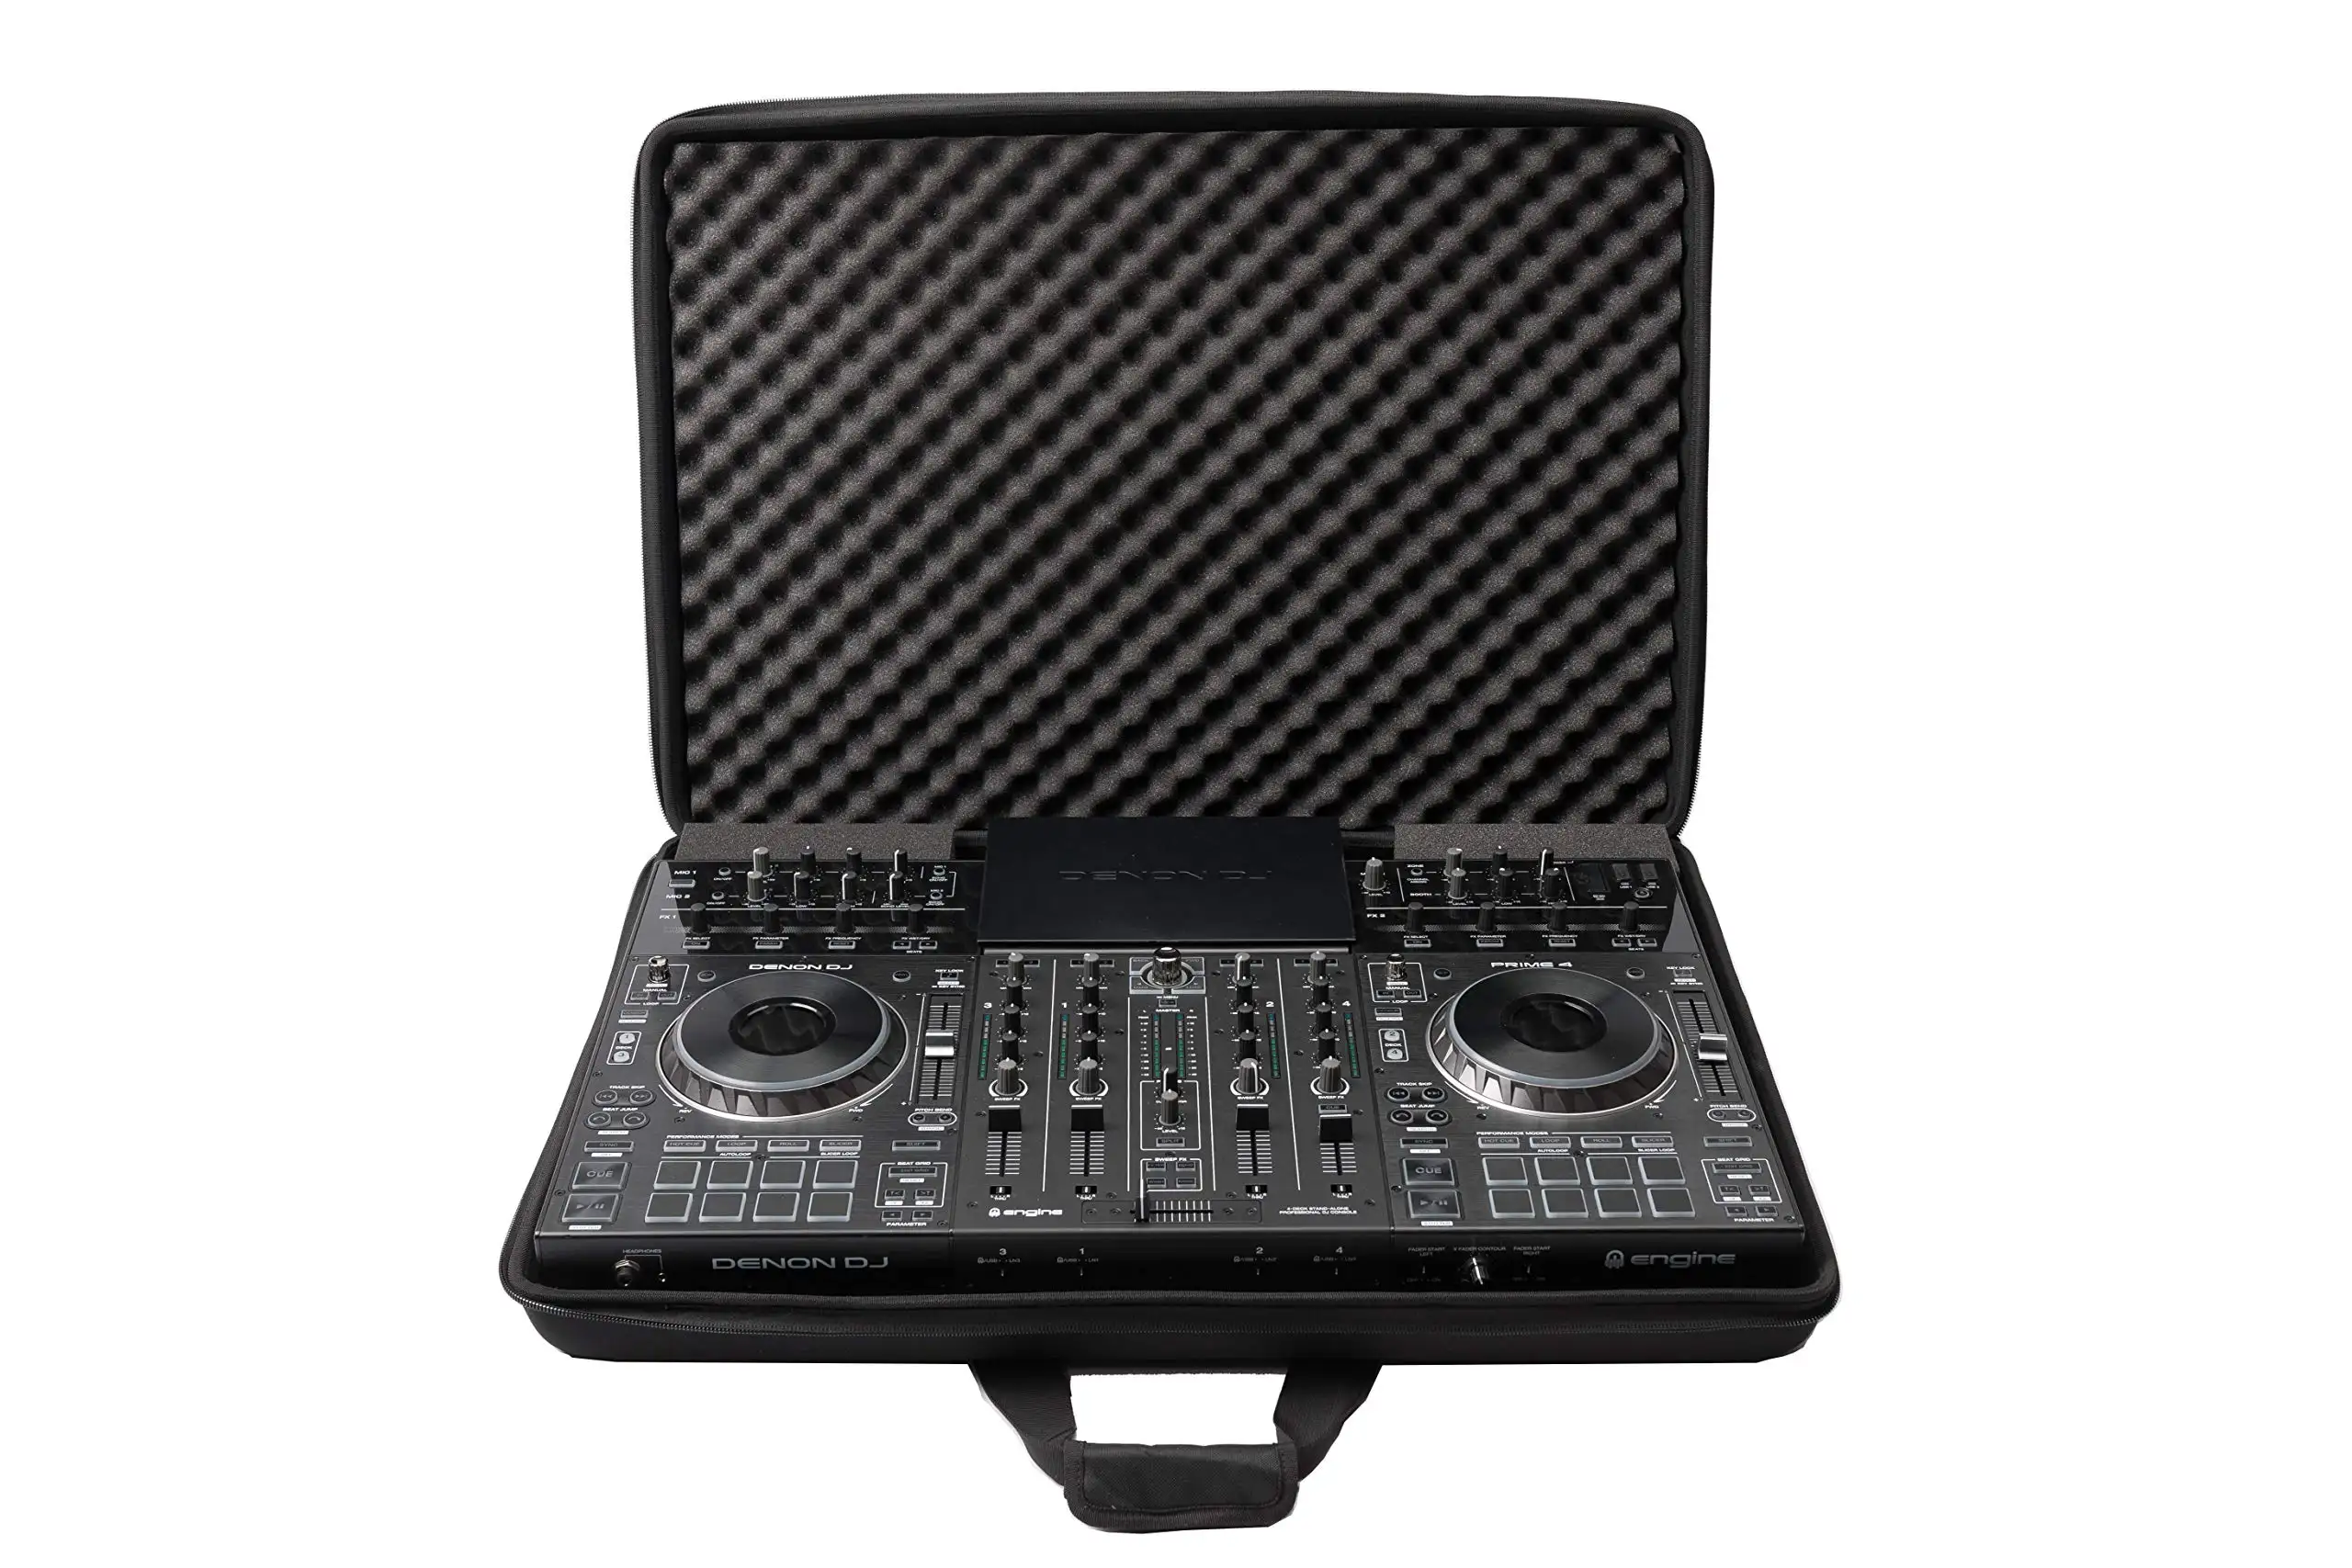 Borsa protettiva per custodia rigida portatile EVA DJ personalizzata all'ingrosso in fabbrica per Pioneer Numark Party Case DJ